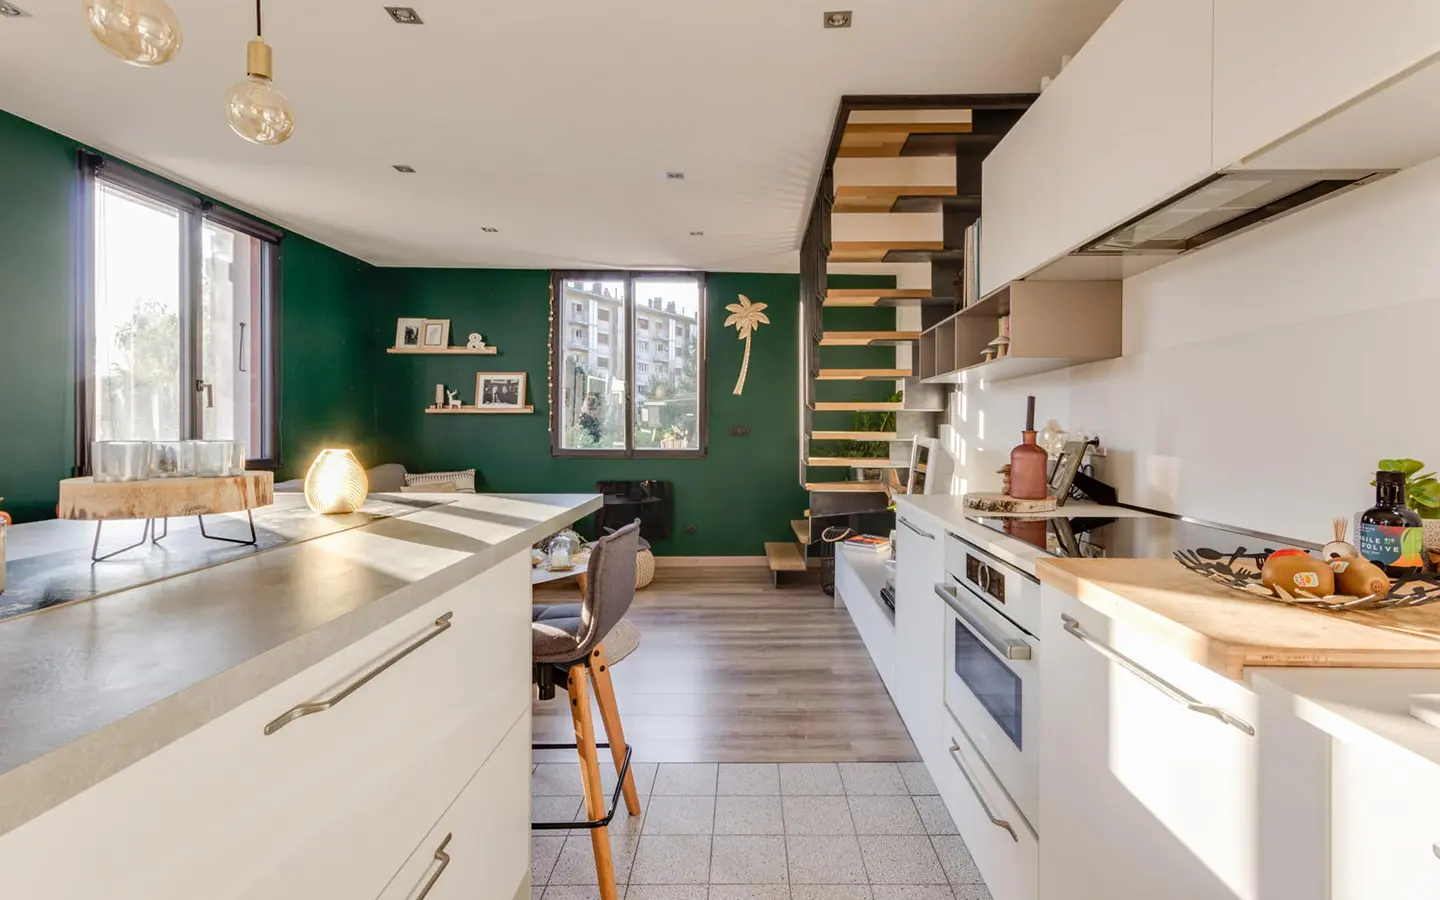 Achat immobilier appartement duplex Annecy-le-vieux cuisine ouverte